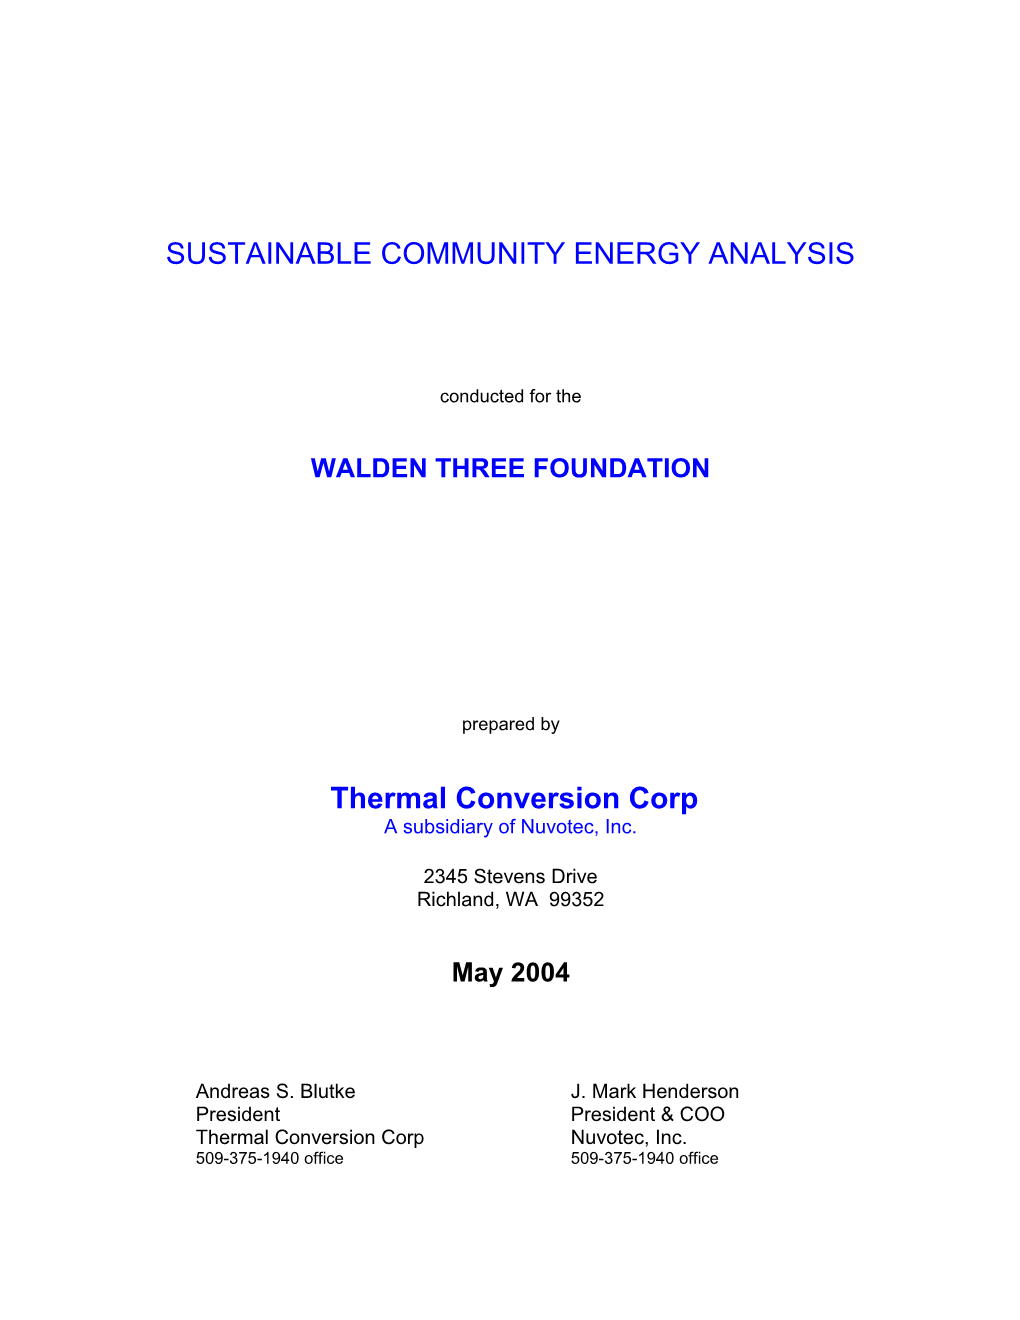 Sustainable Community Energy Analysis